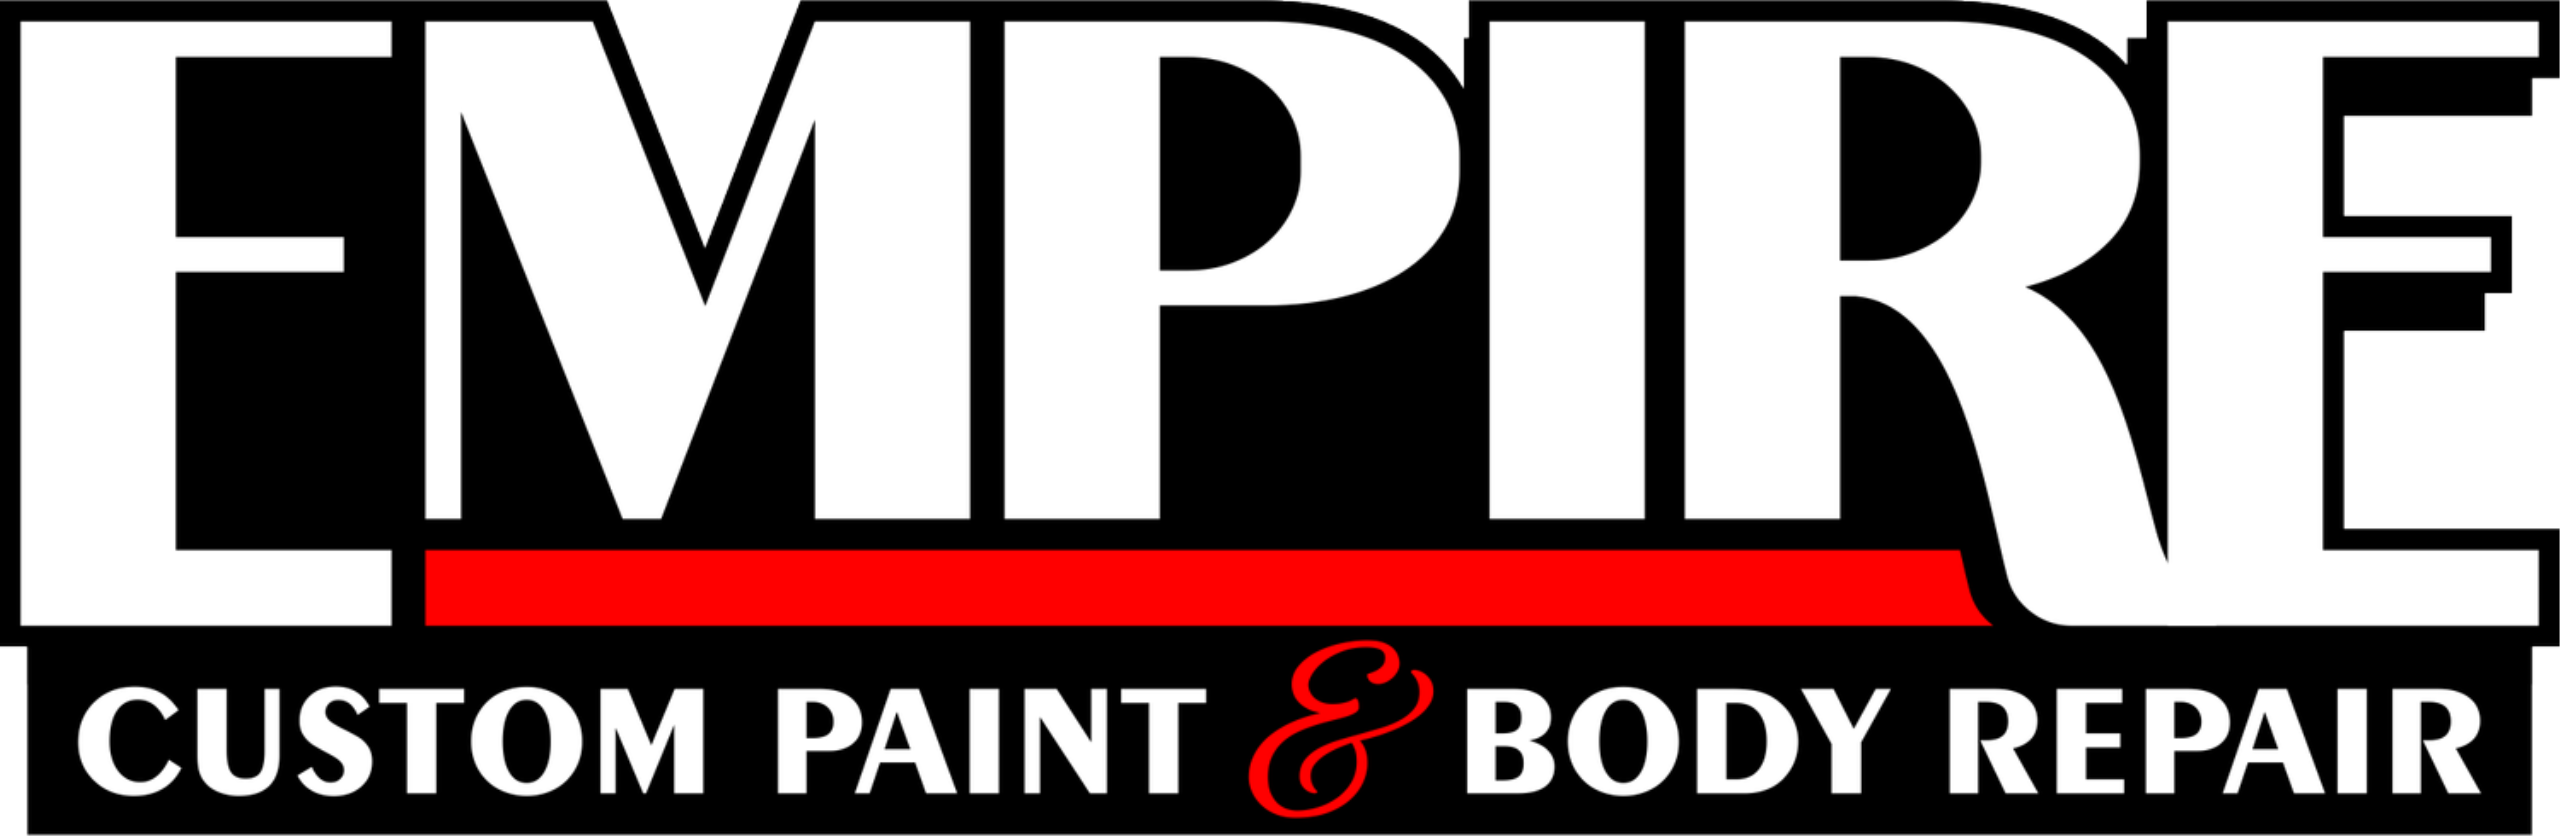 Empire Custom Paint & Body Repair Logo